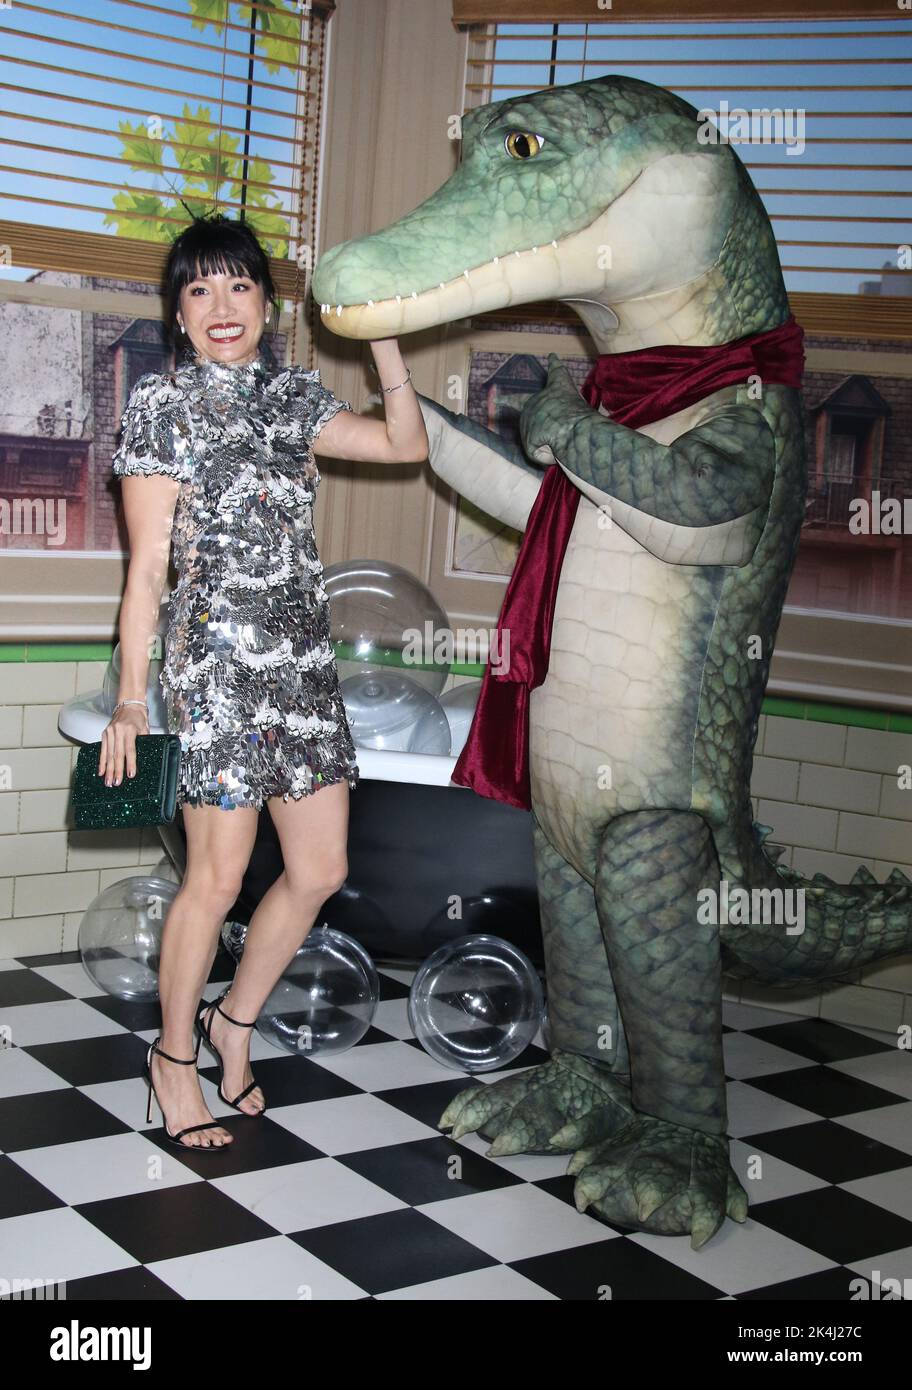 Nueva York, NY, EE.UU. 02nd de Oct de 2022. Constance Wu en el estreno mundial de 'Lyle, Lyle, Crocodile' en AMC Lincoln Square Theater el 02 de octubre de 2022 en la ciudad de Nueva York. Crédito: RW/Media Punch/Alamy Live News Foto de stock